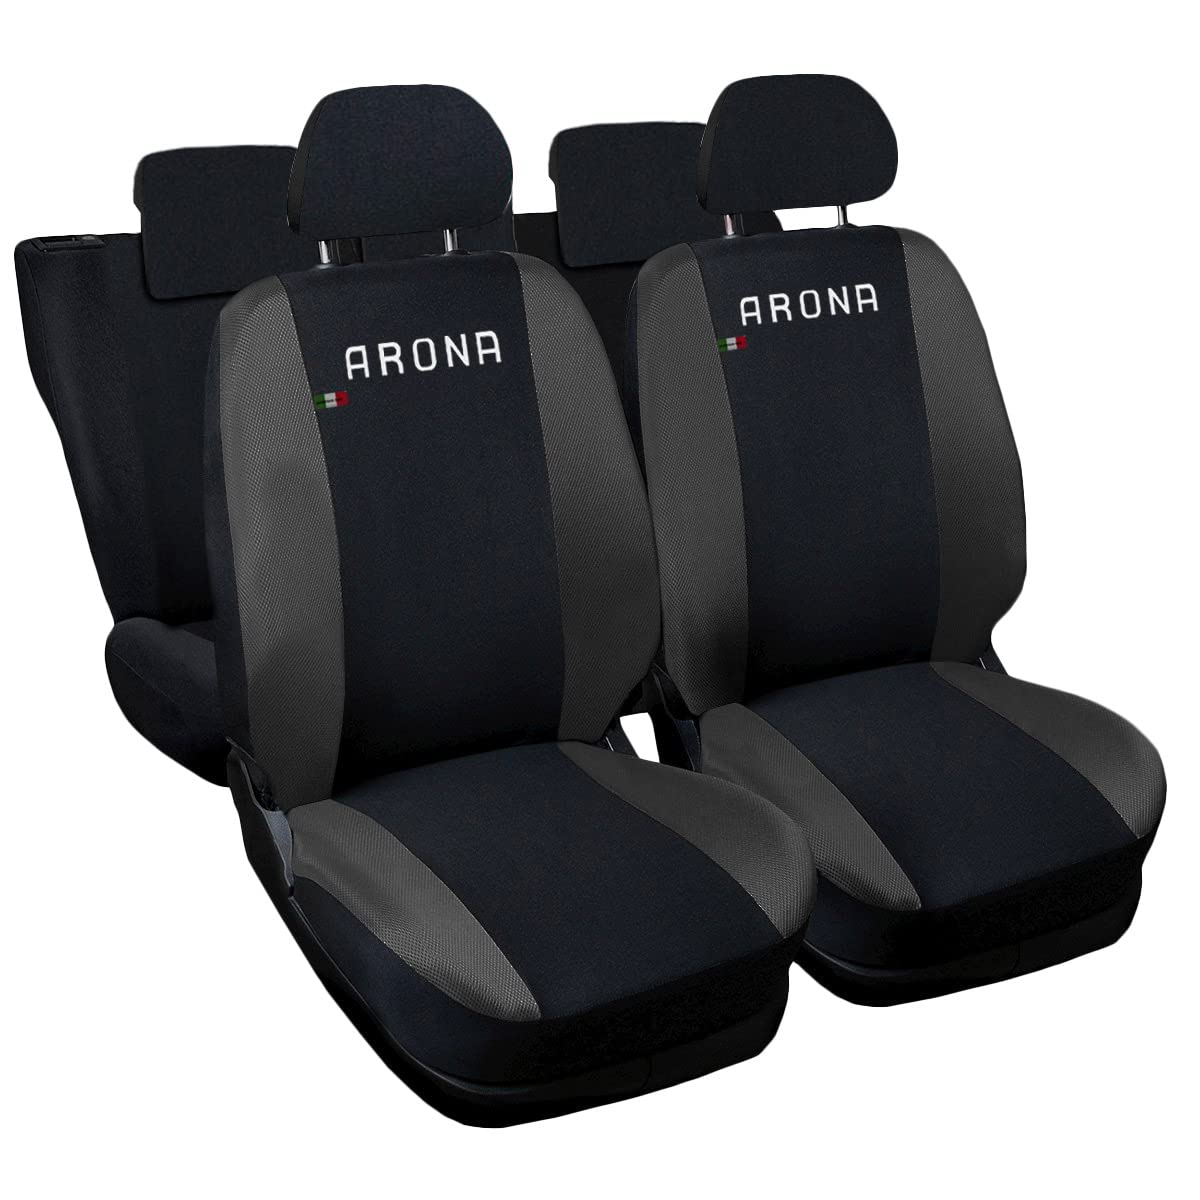 Lupex Shop Autositzbezüge kompatibel mit Arona, Made in Italy, Polyestergewebe, kompletter Satz Vorder- und Rücksitze (Schwarz - Dunkelgrau) von Lupex Shop